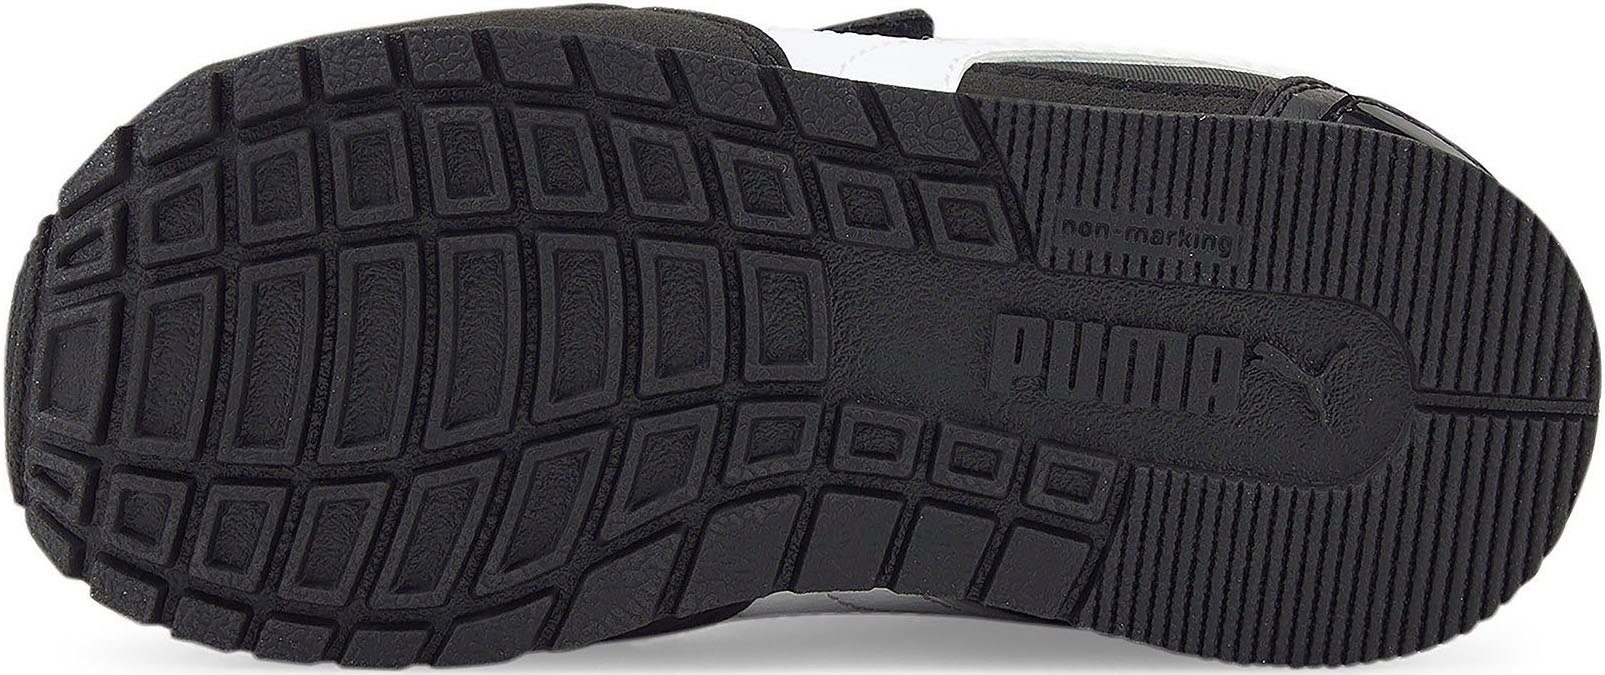 PUMA ST Runner NL schwarz Klettverschluss v3 Sneaker Inf V mit